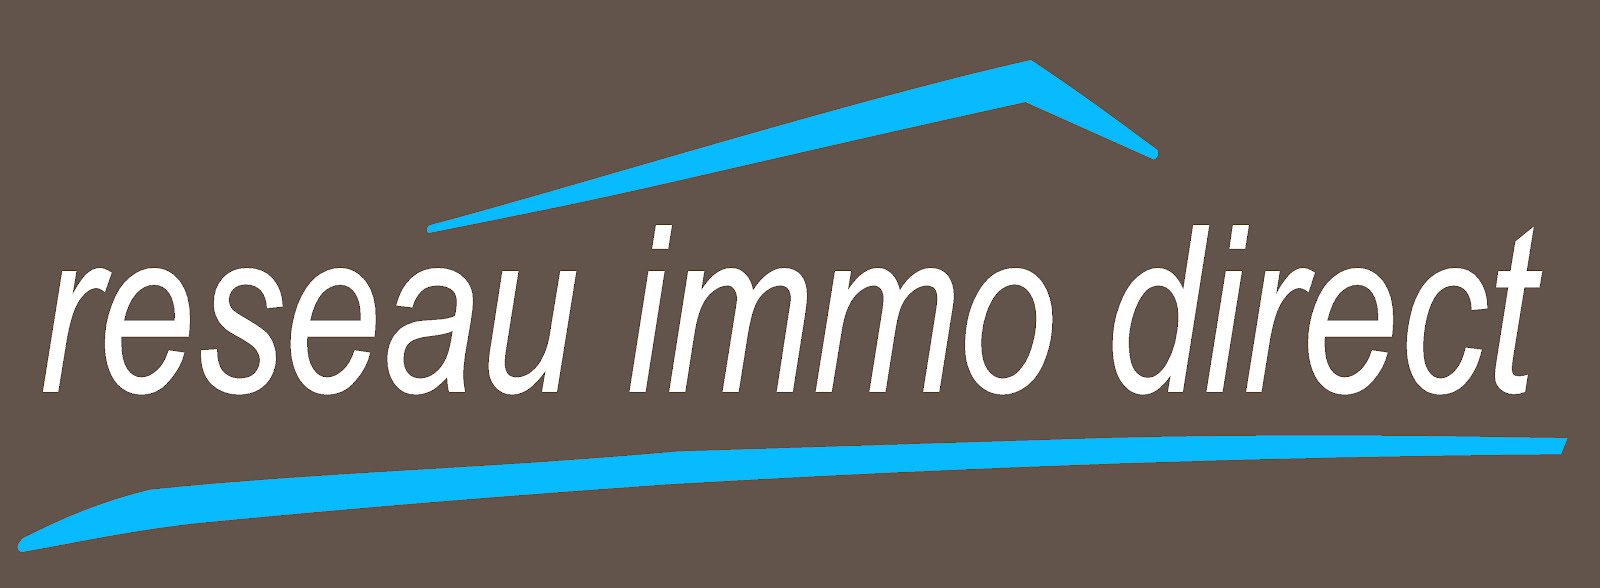 Immodirect logo